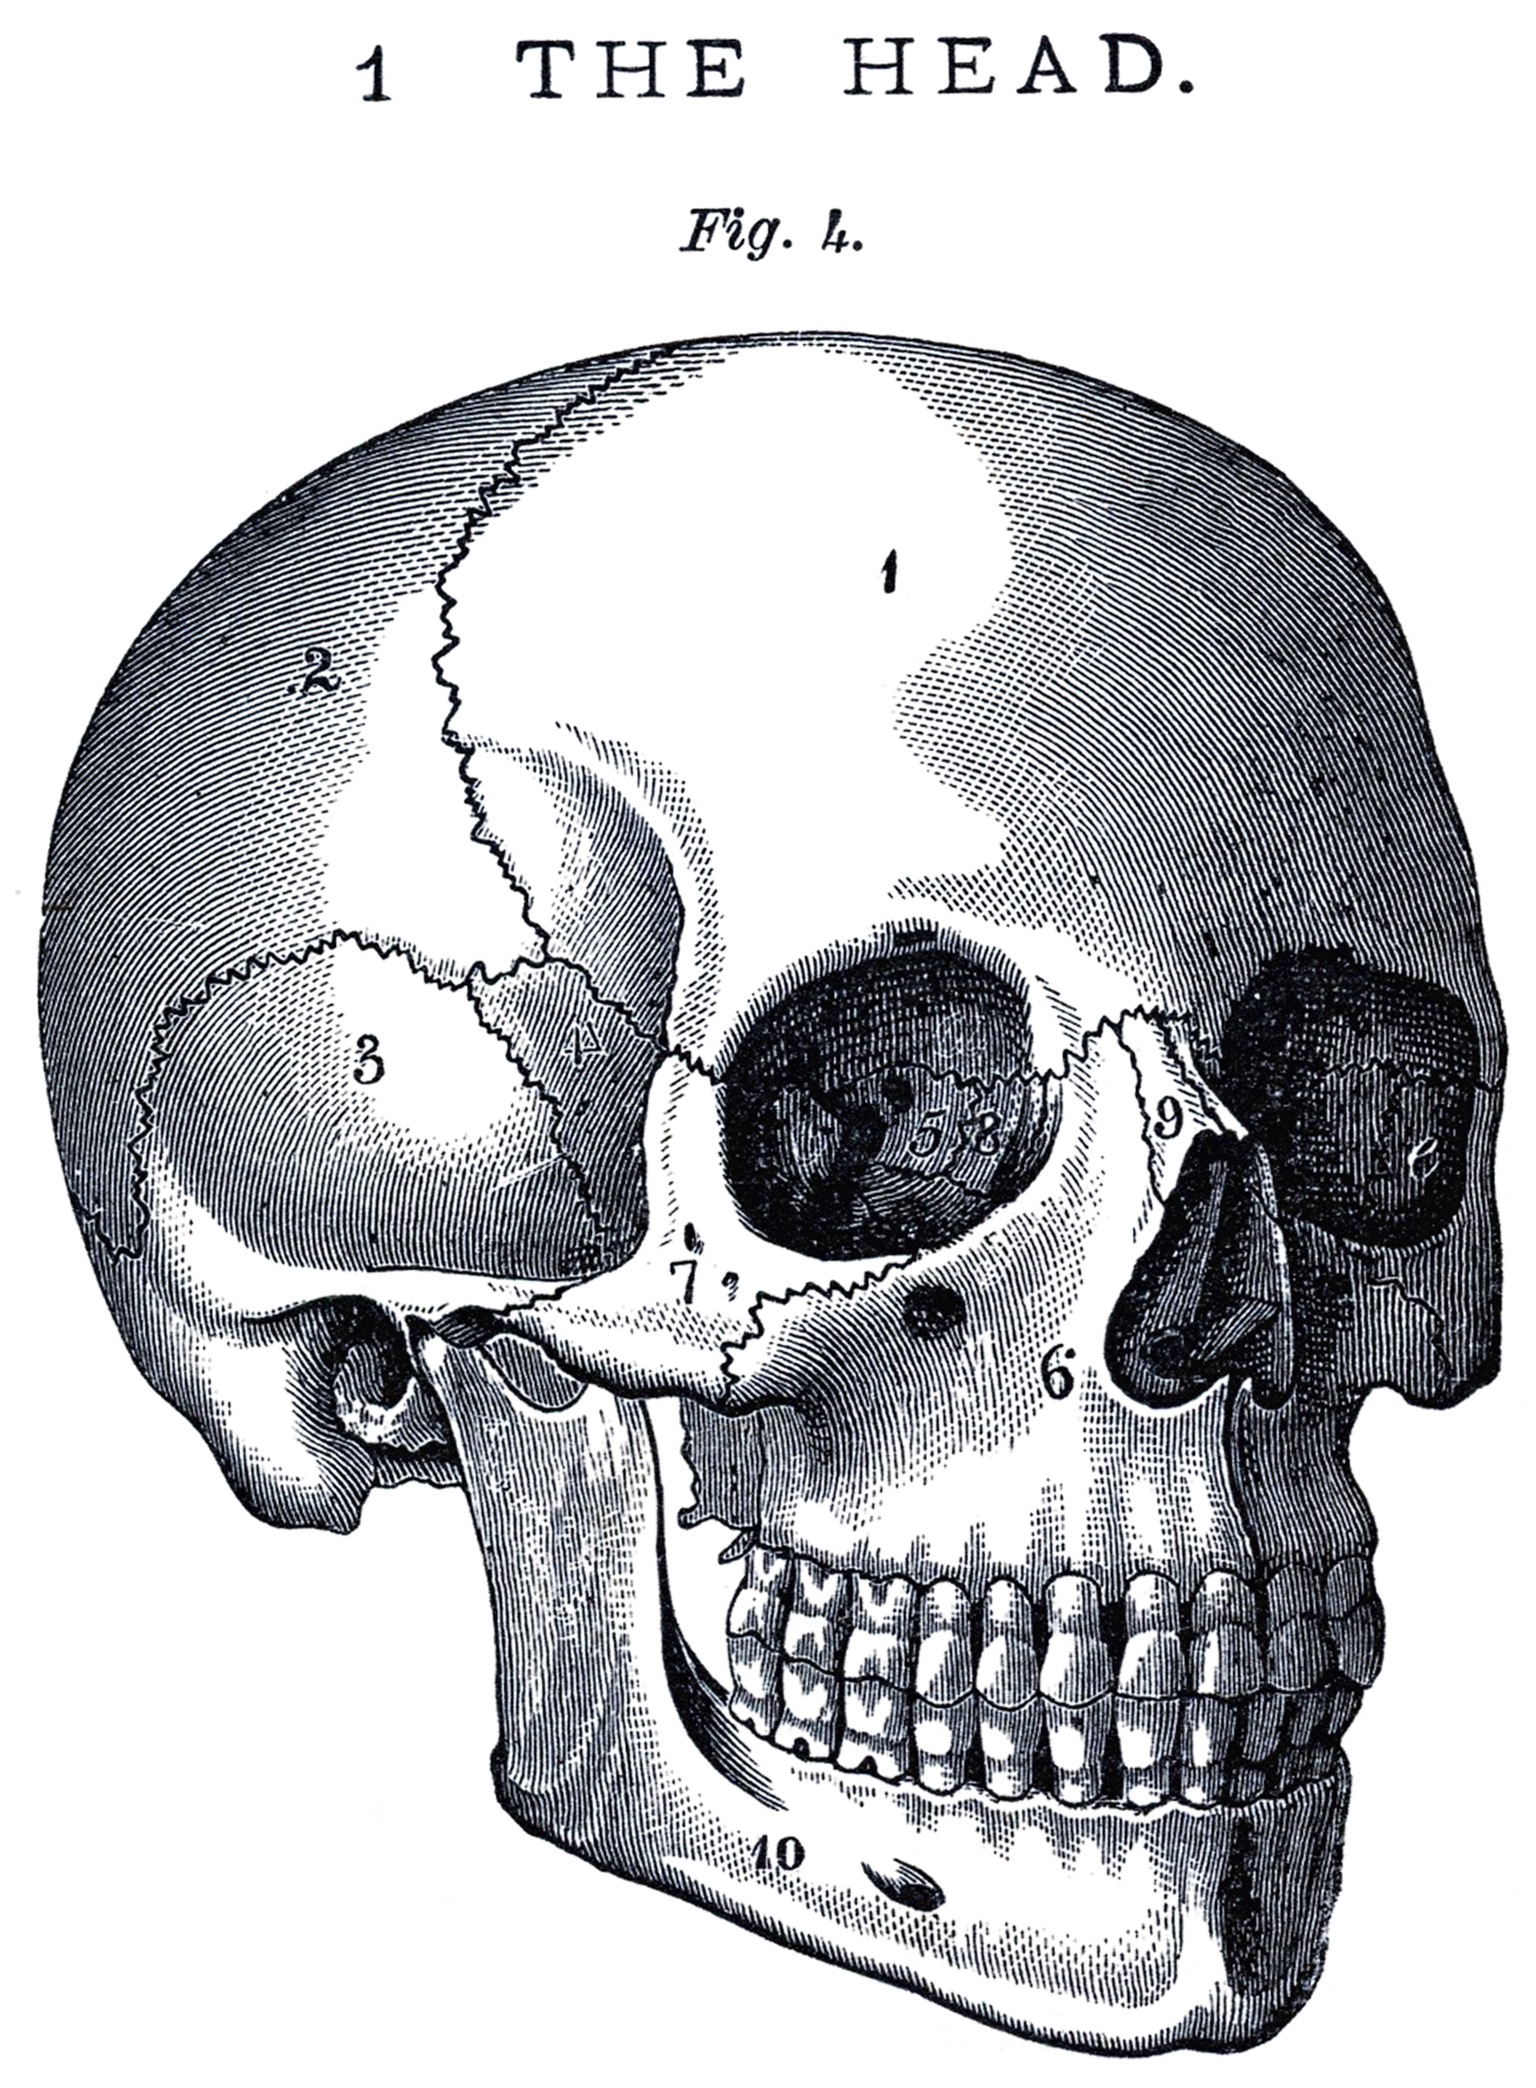 clipart skull victorian